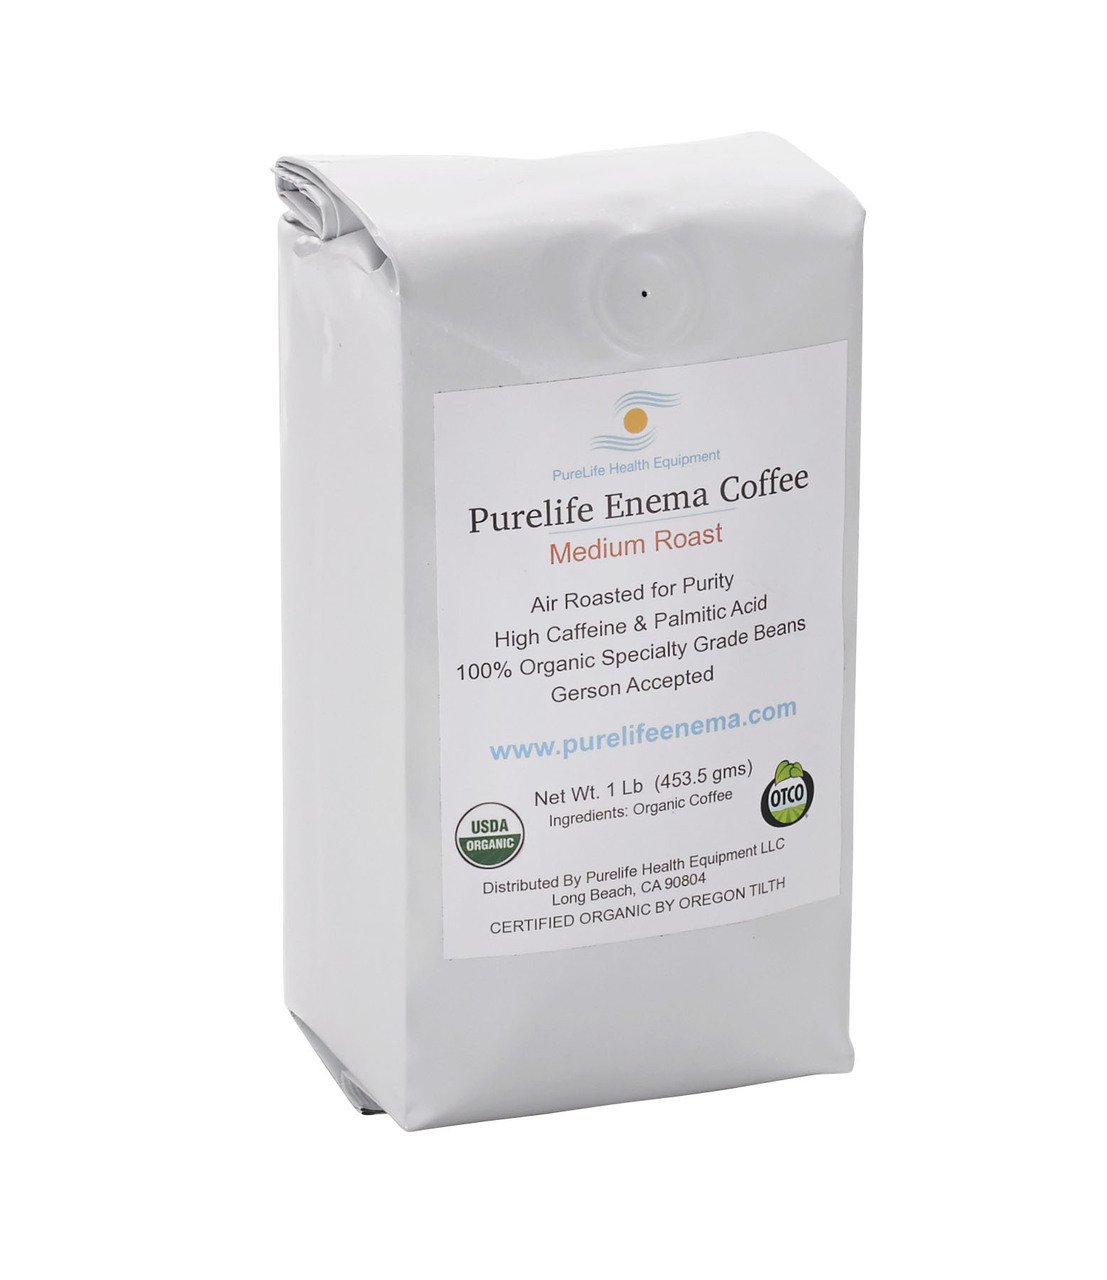 Purelife Enema Coffee Medium Roast